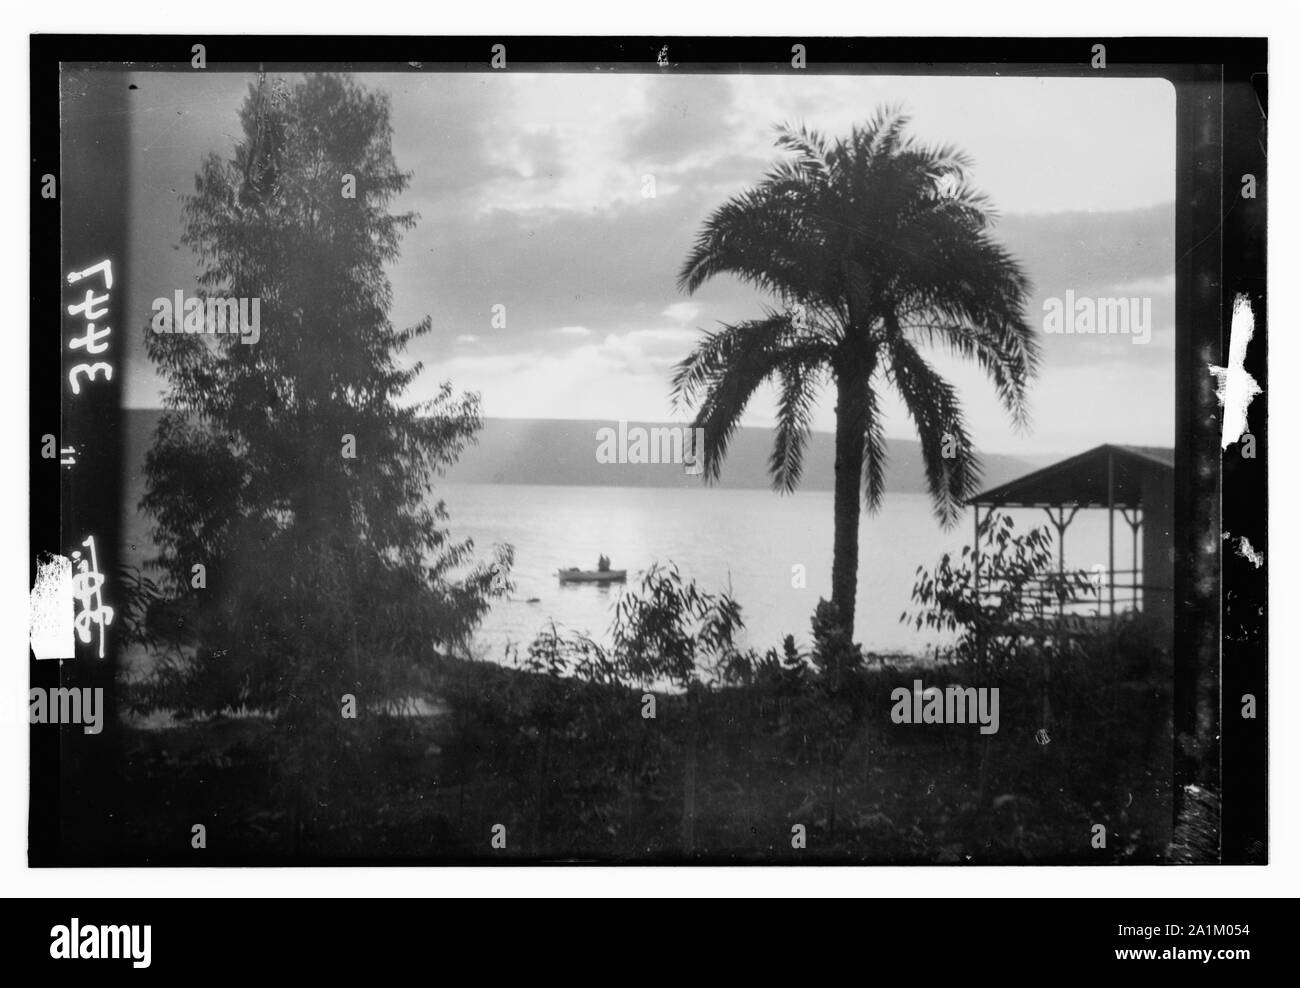 Vistas del norte. El lago de Galilea. Amanecer de Tiberias. Pintoresco con palmera y barco Foto de stock